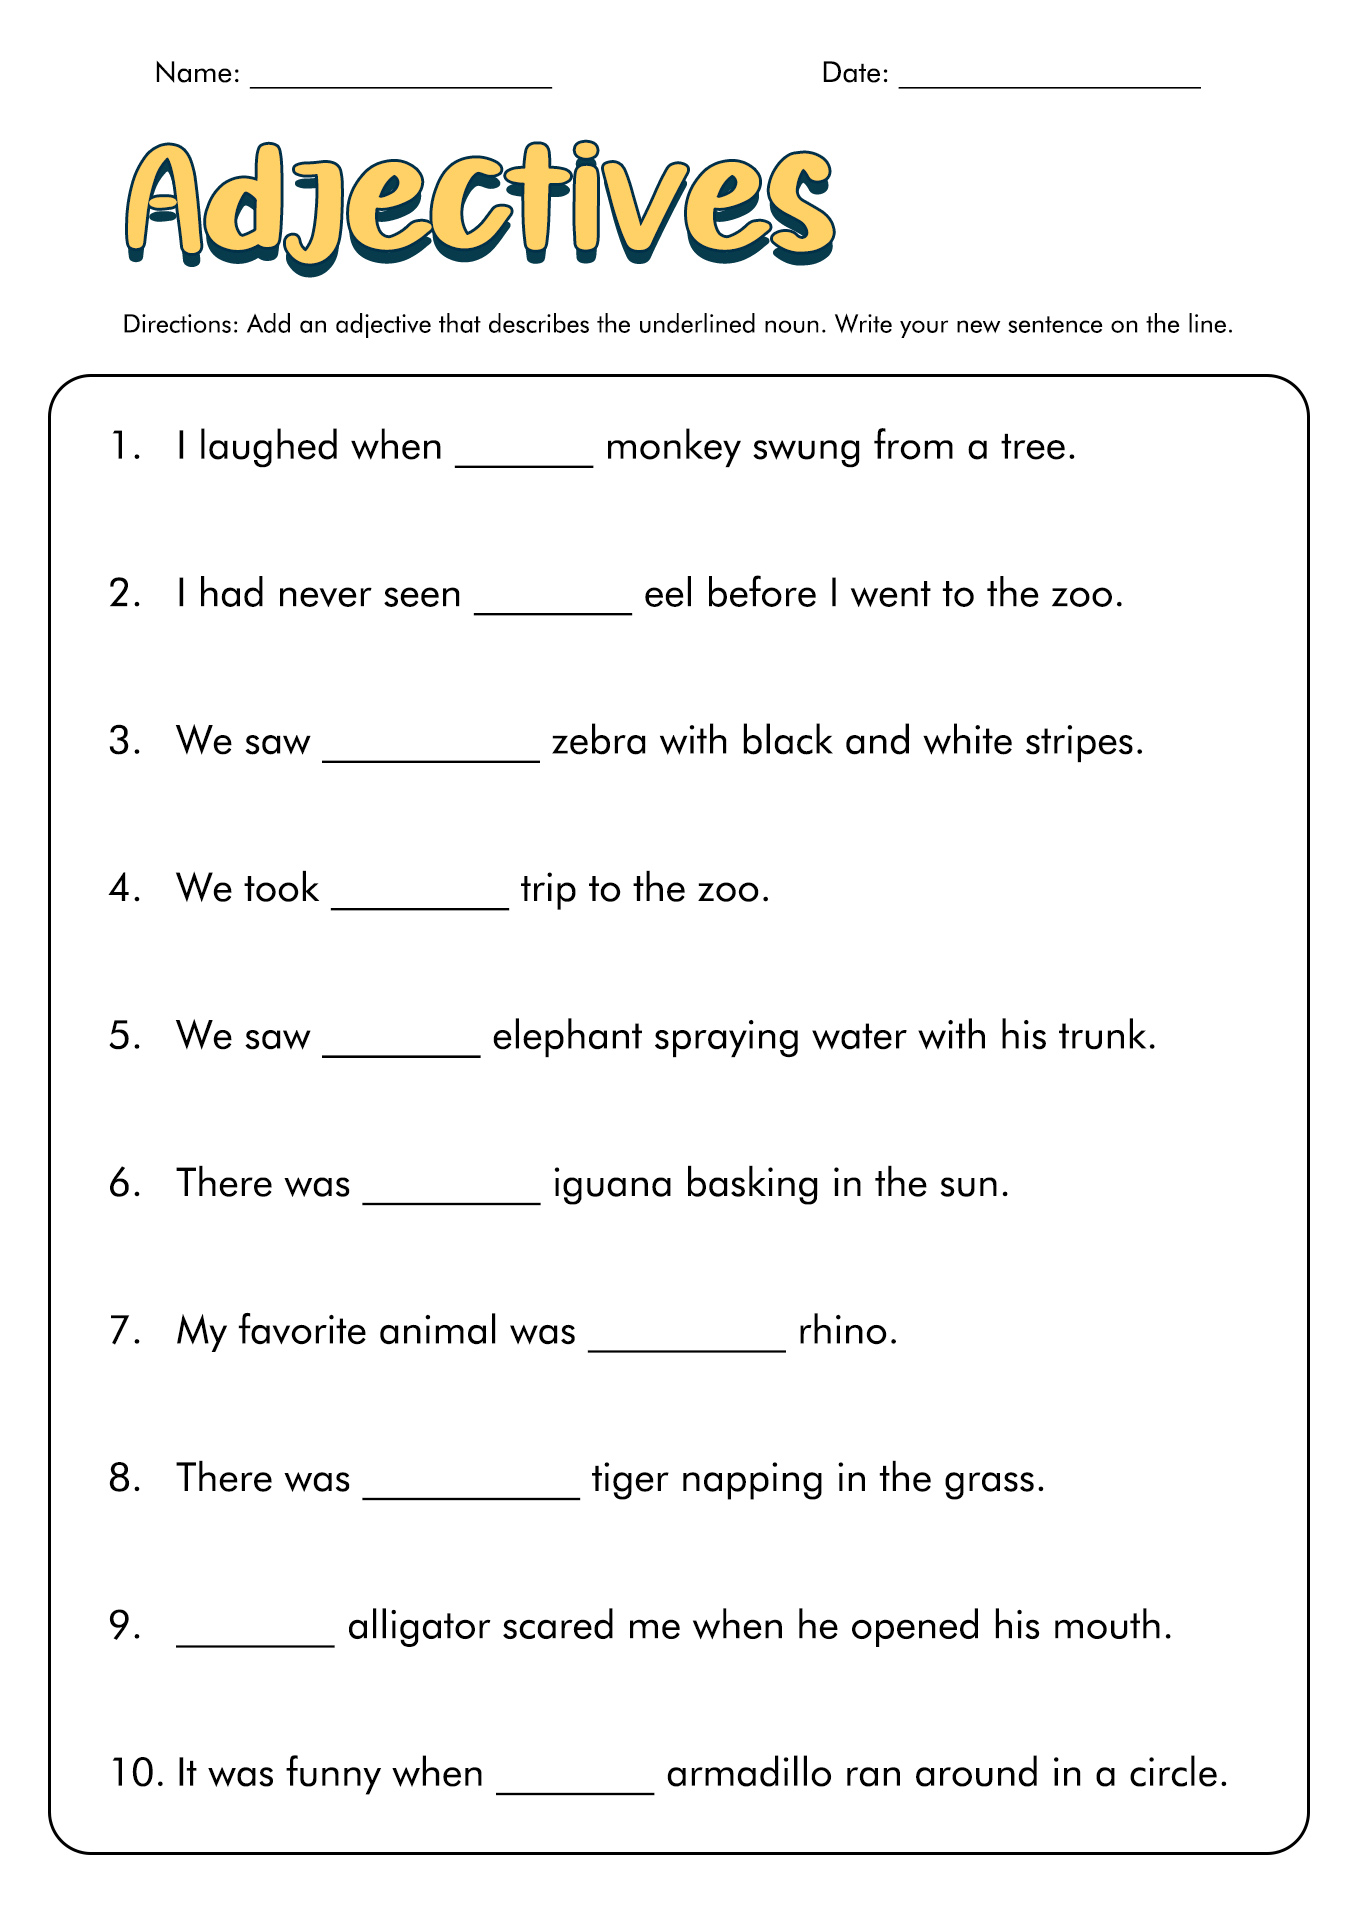 16-best-images-of-adult-esl-worksheets-esl-writing-worksheets-for-adults-adult-esl-vocabulary